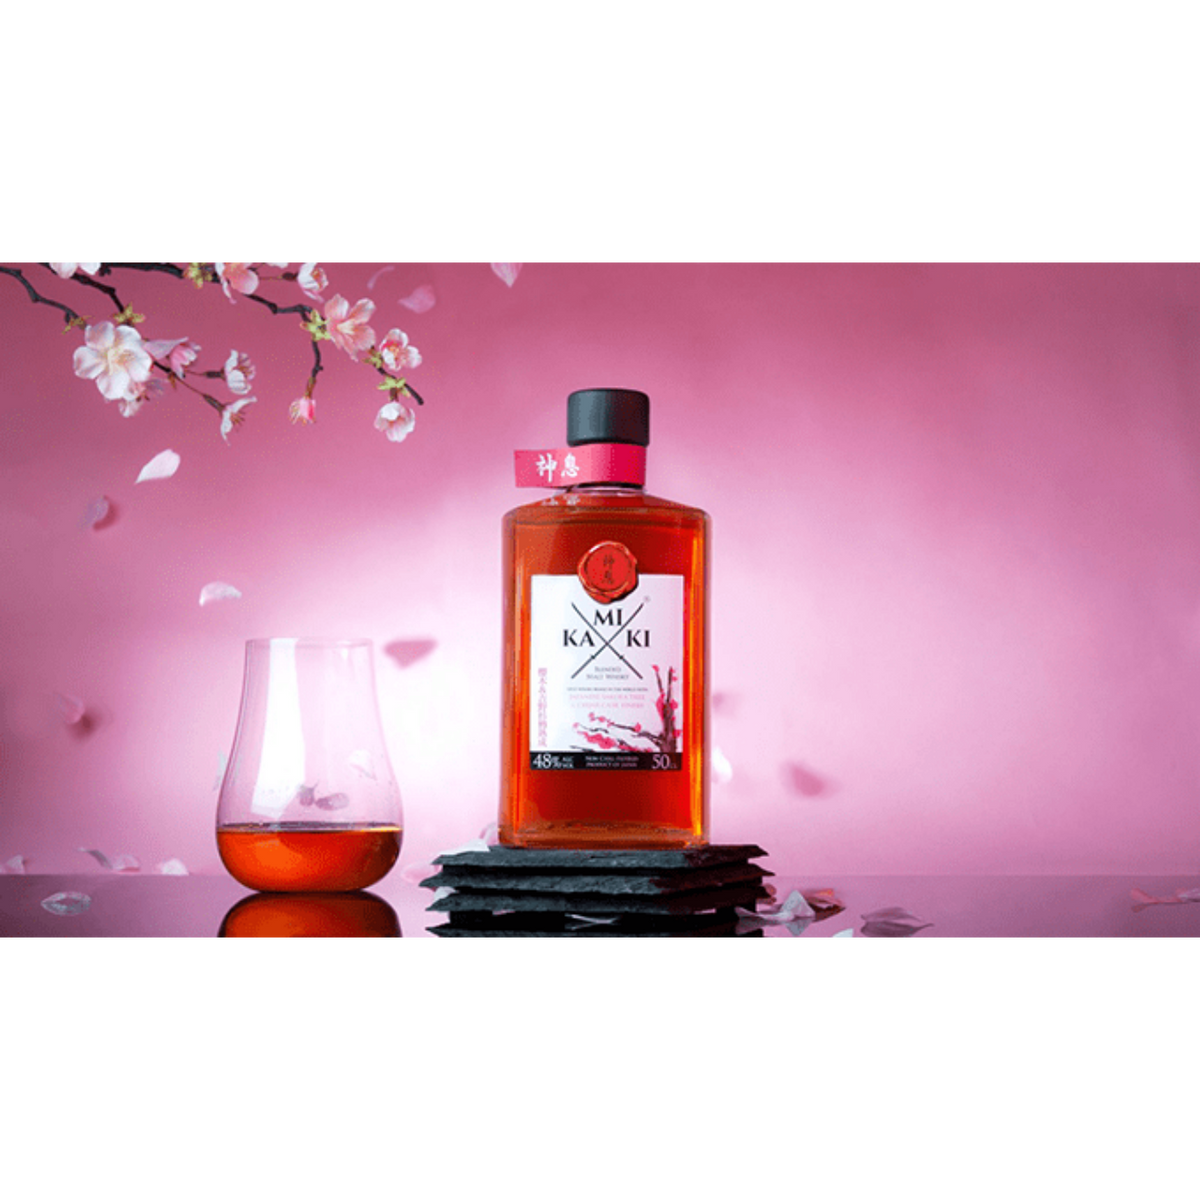 Kamiki Sakura Wood Japanese Blended Malt Whisky 500ml